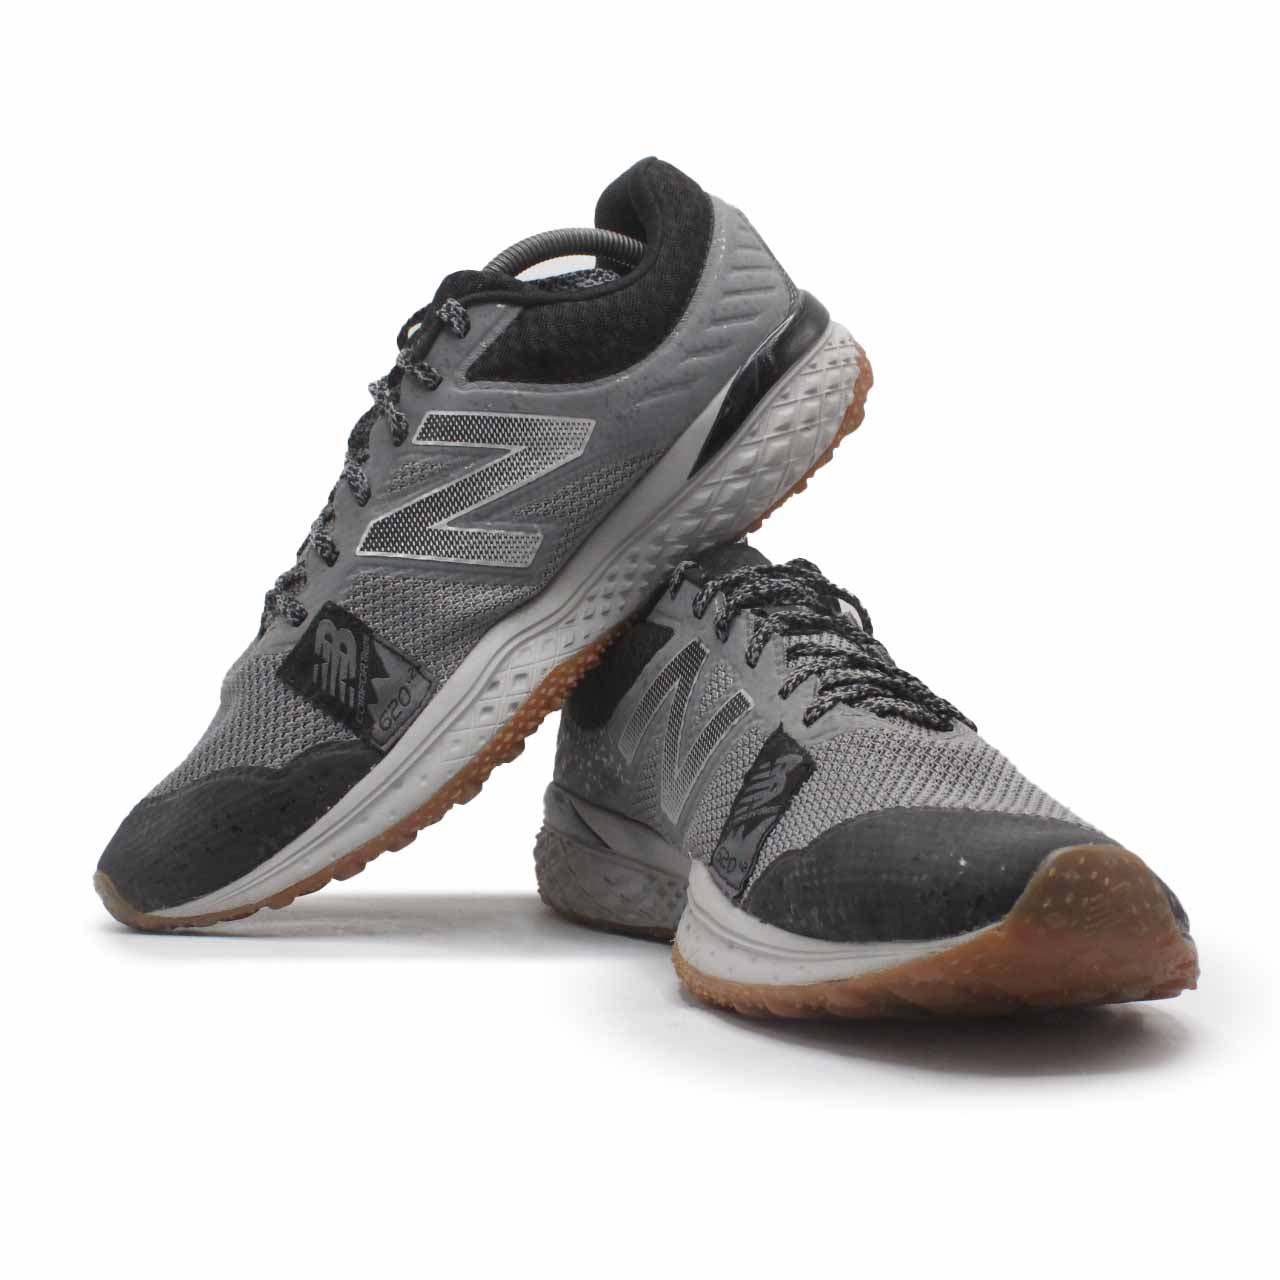 New Balance 620 Running Shoe